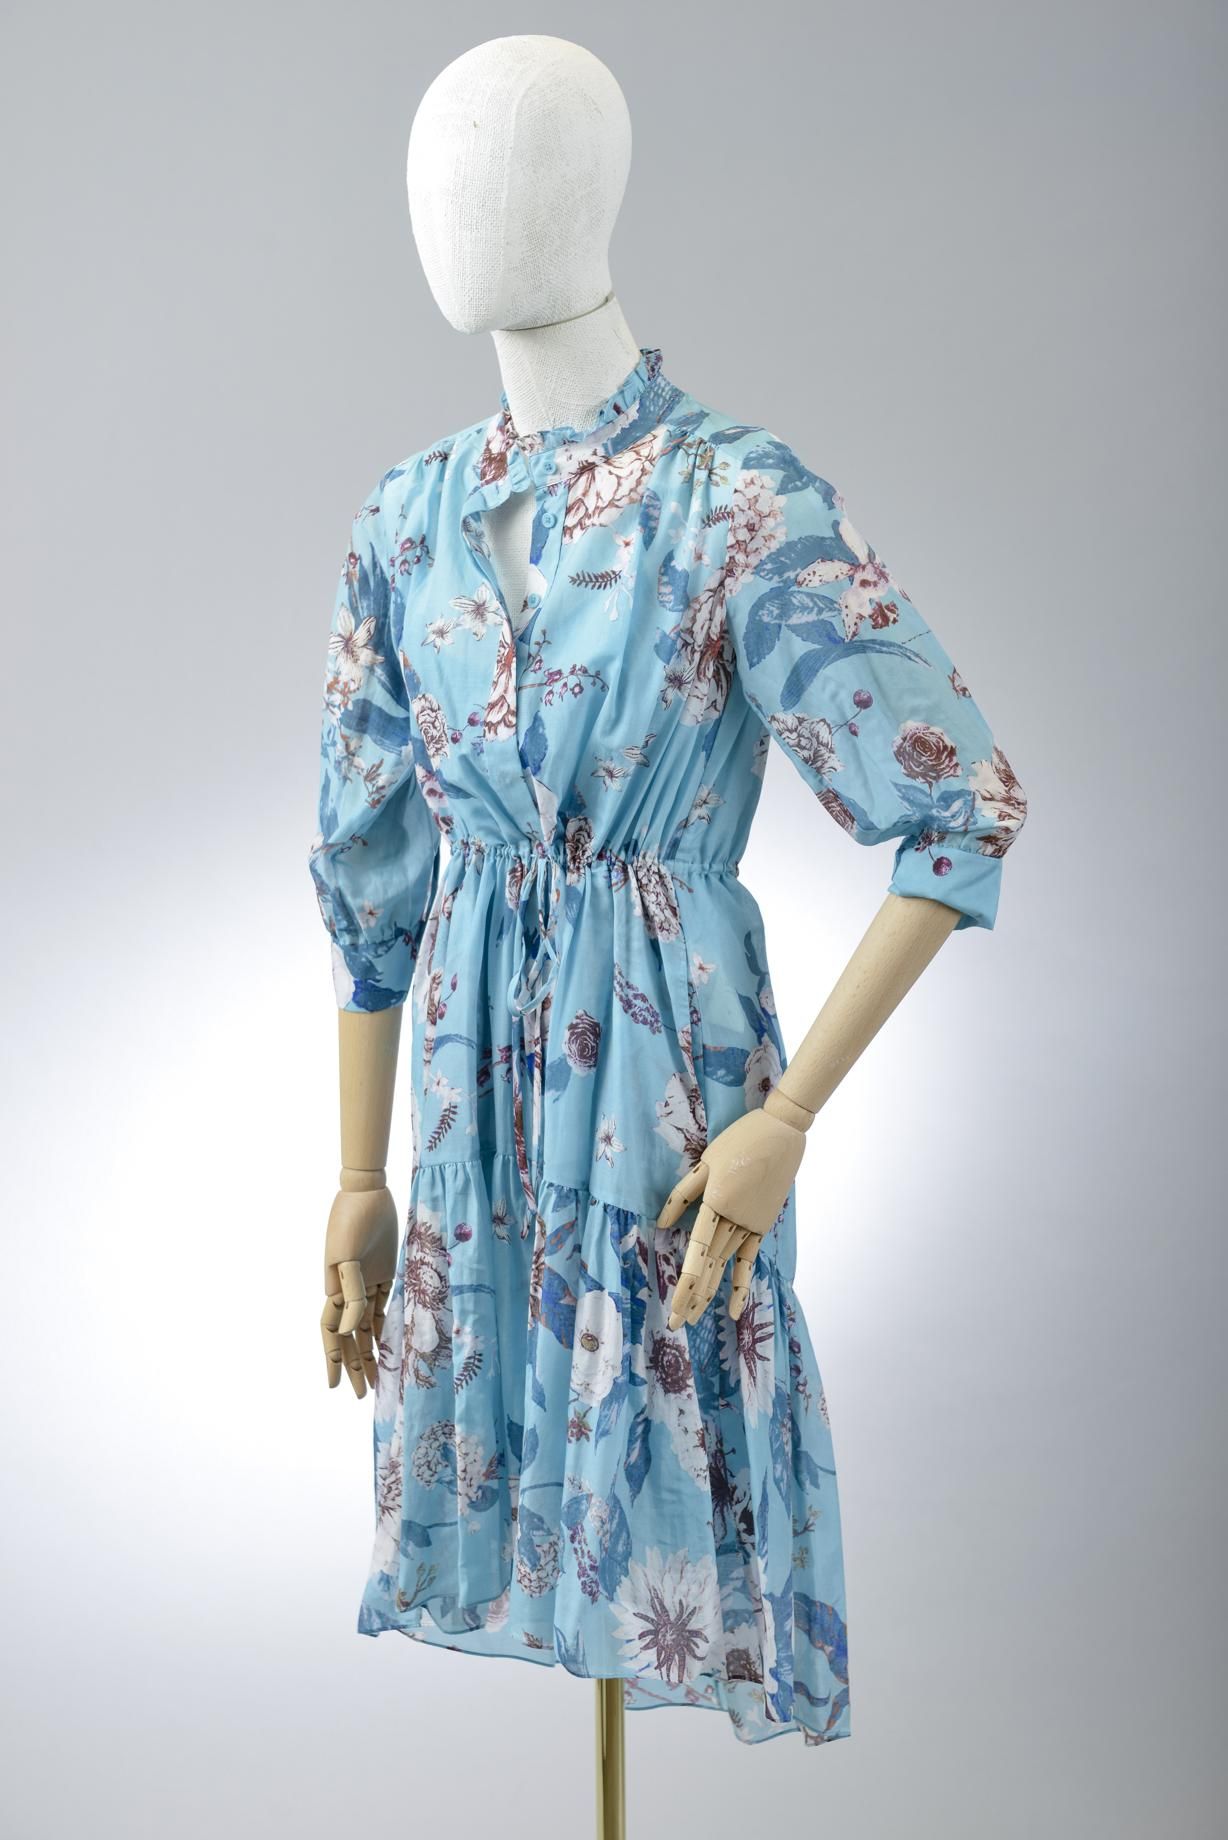 Null *尺寸XXS DVF - Diane Von Fürstenberg

套装包括。

宽松的丝棉纱中长连衣裙，"DVF Davey "型号，"丁香雨 &hellip;